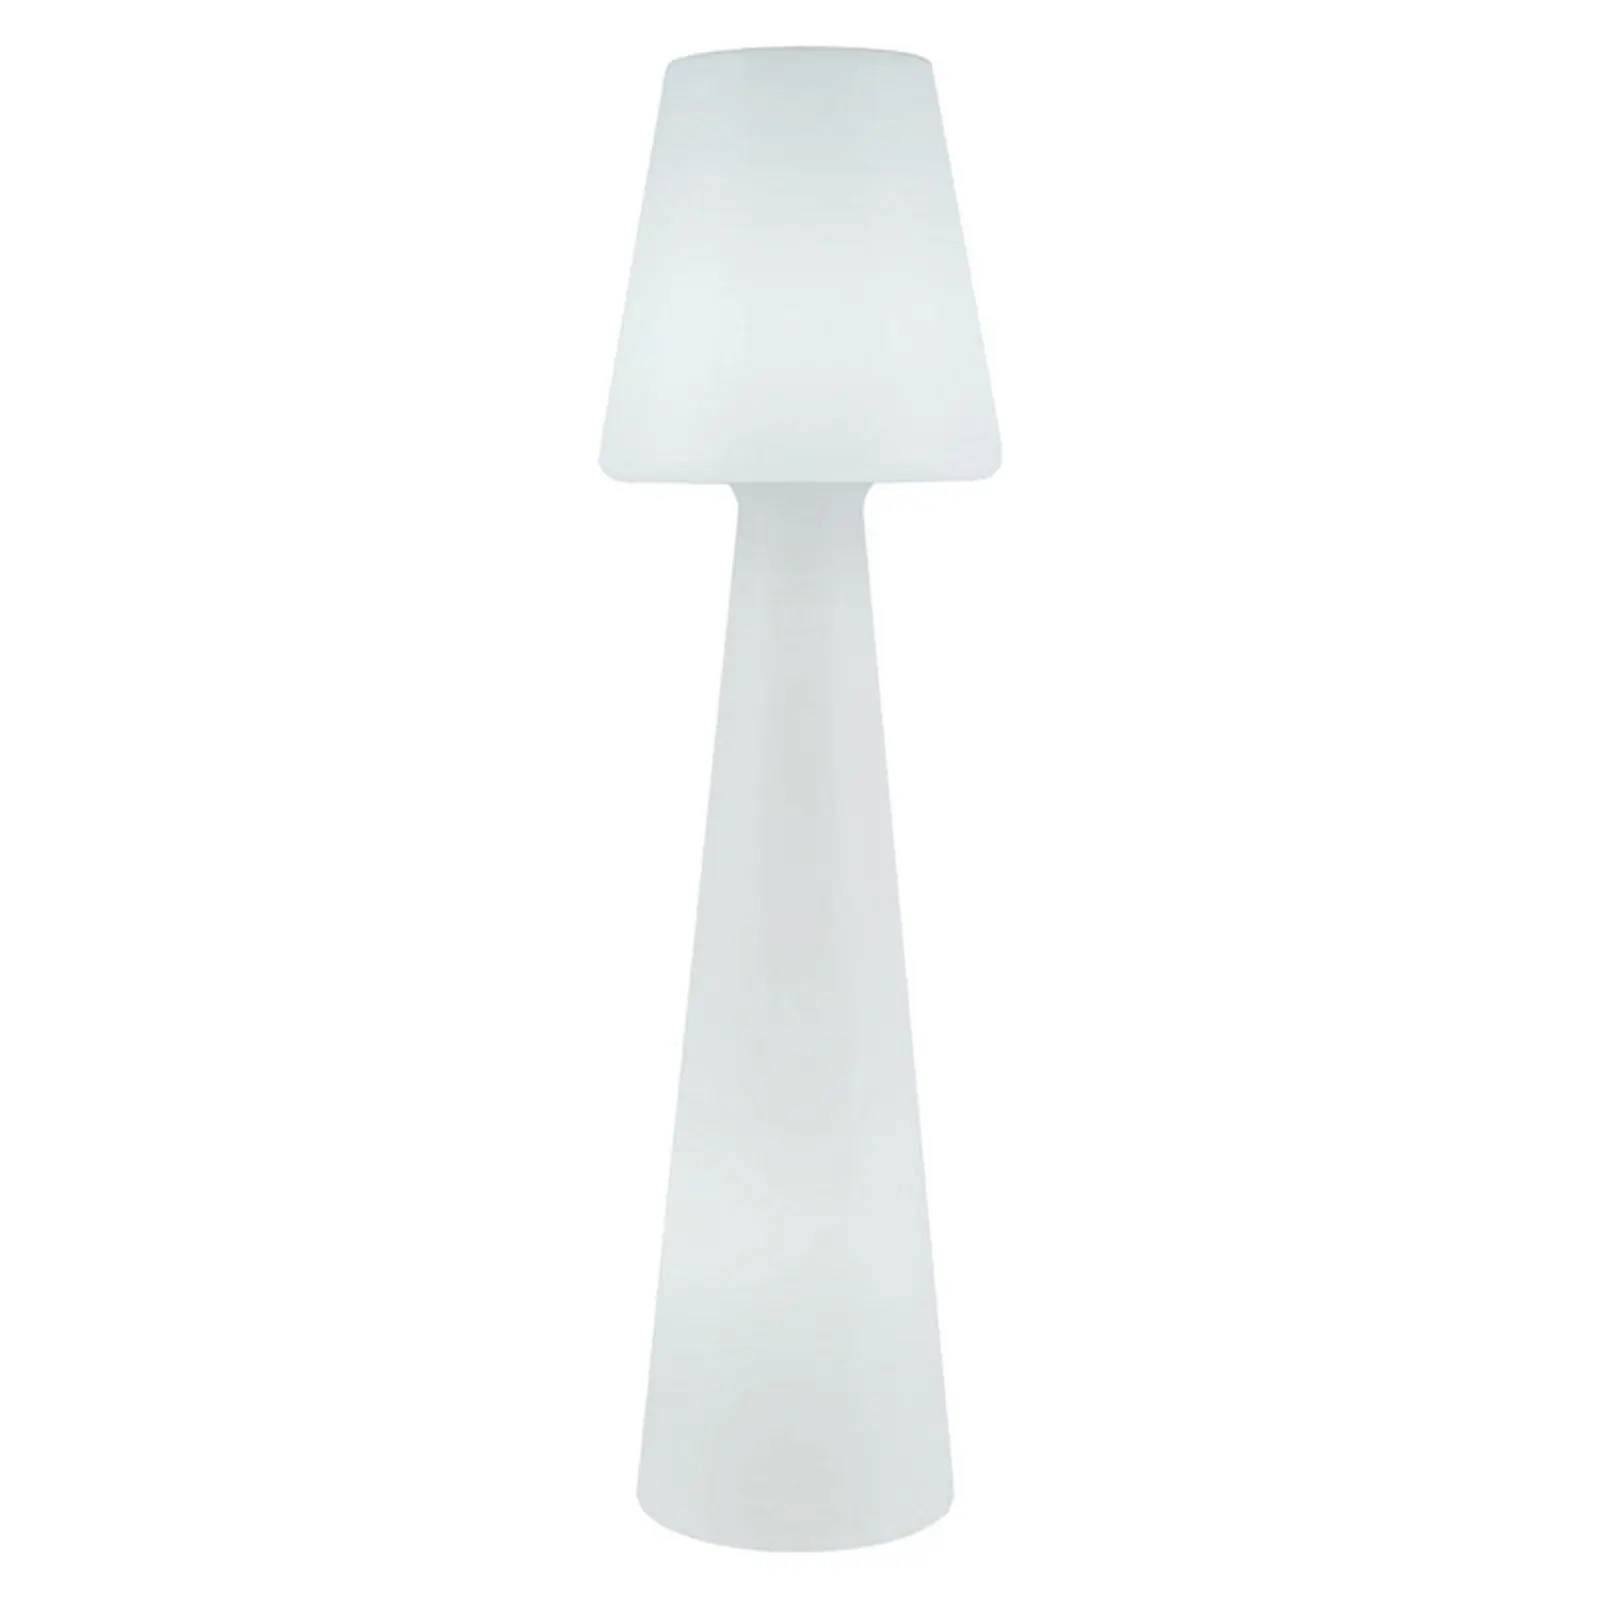 Stojací lampa Newgarden Lola / výška 165 cm / teplá bílá / POŠKOZENÝ OBAL